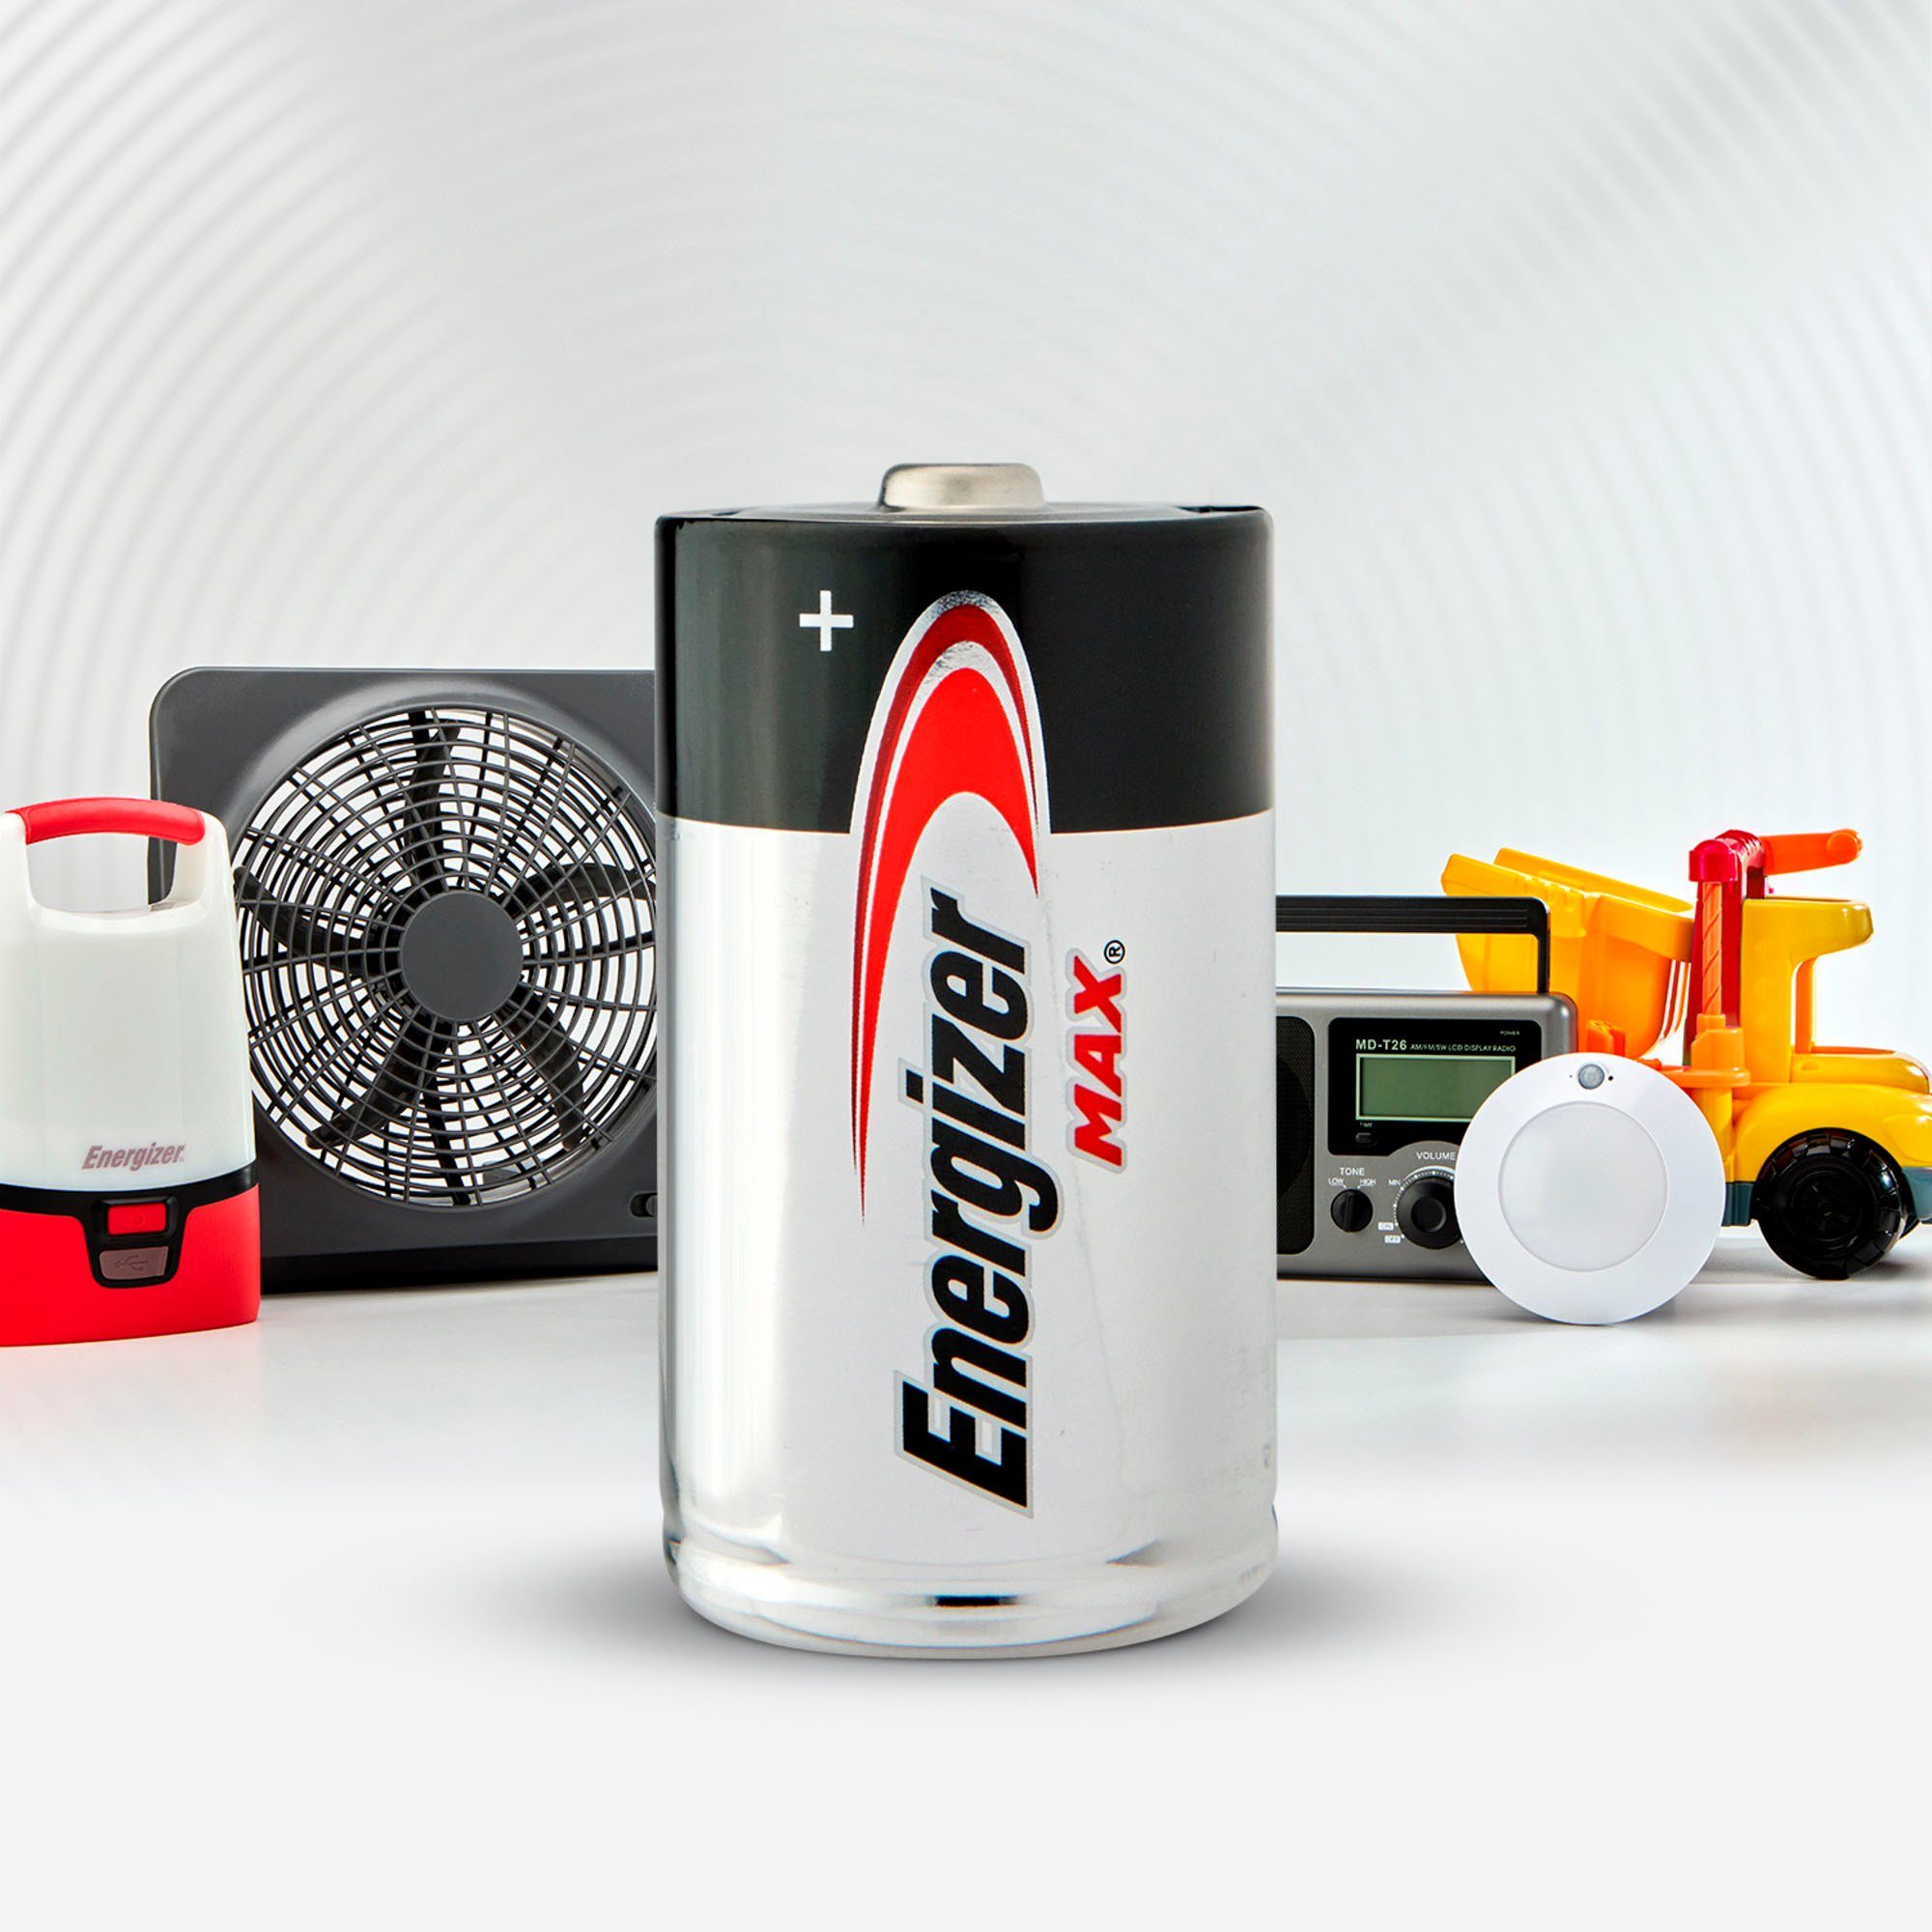 Energizer 4er St) Alkaline Batterie, (4 MAX Pack D